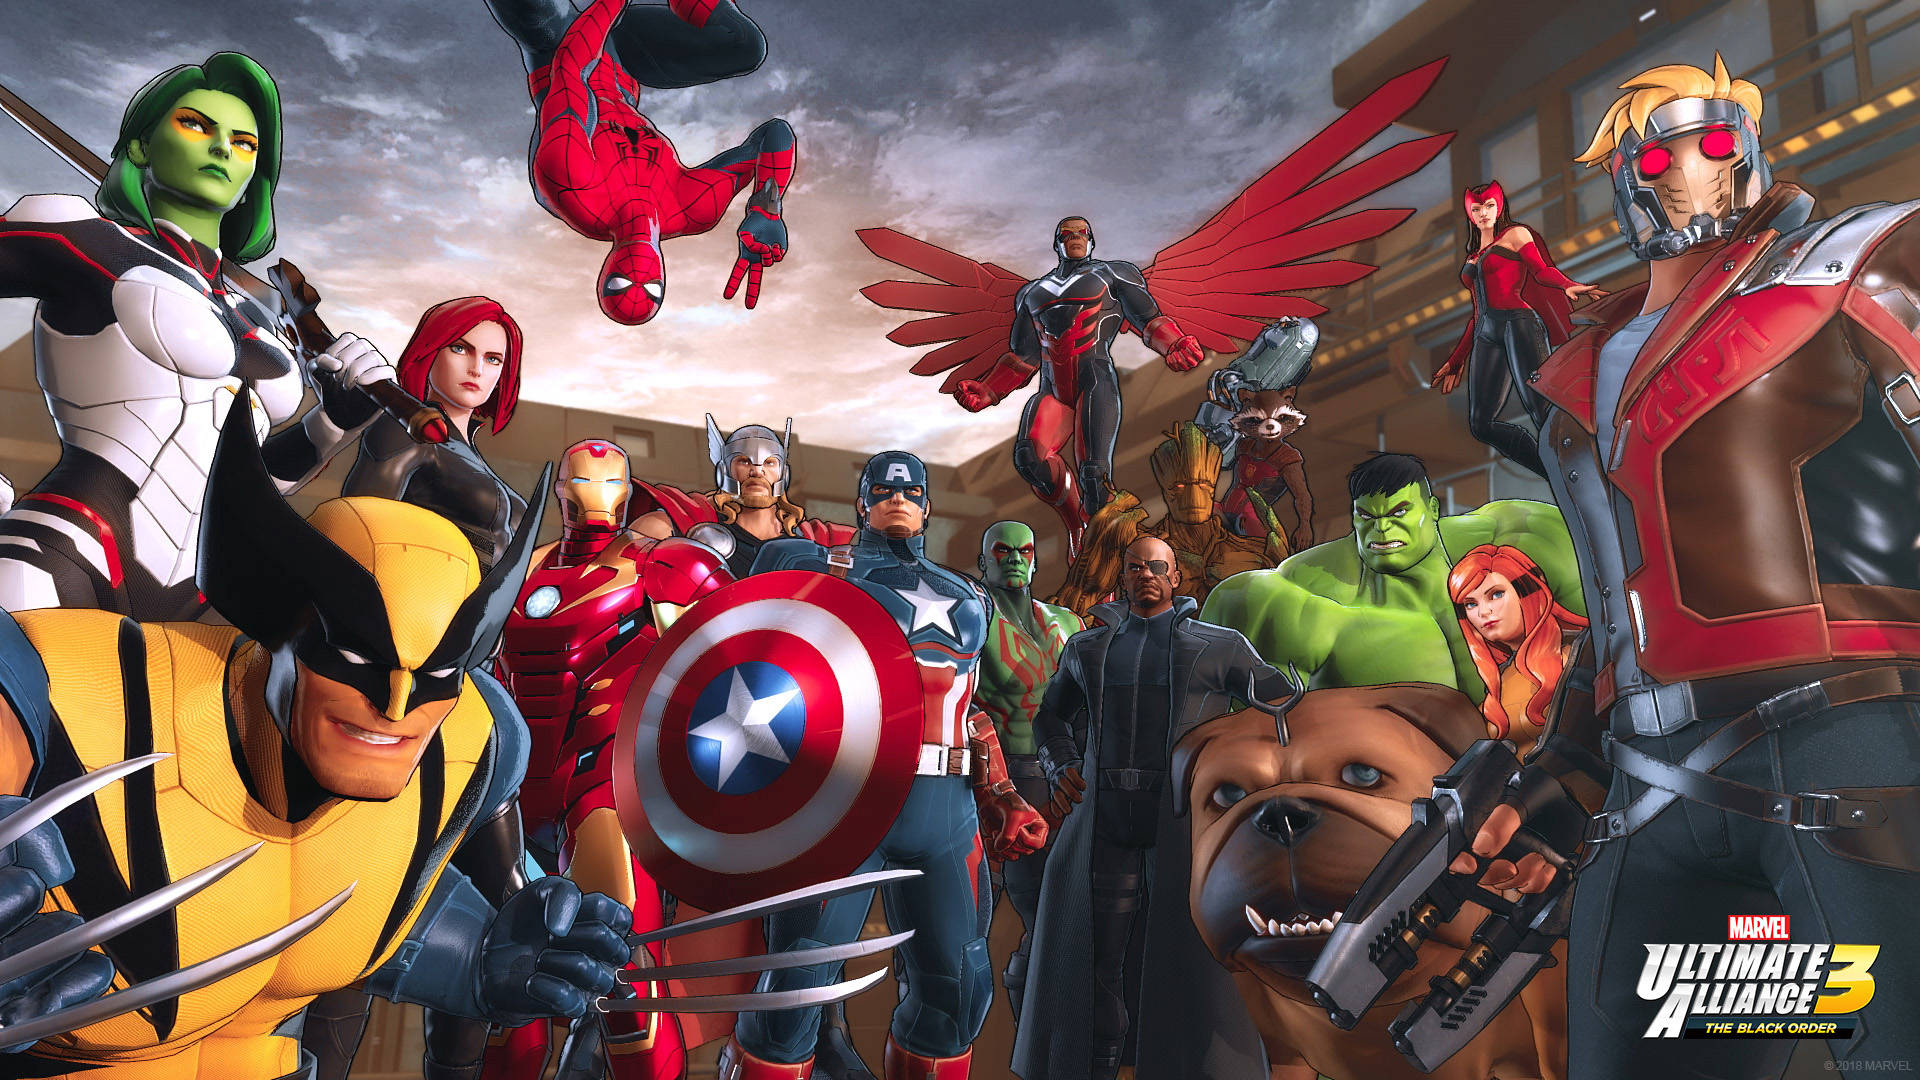 Marvel Superheroes Ultimate Alliance